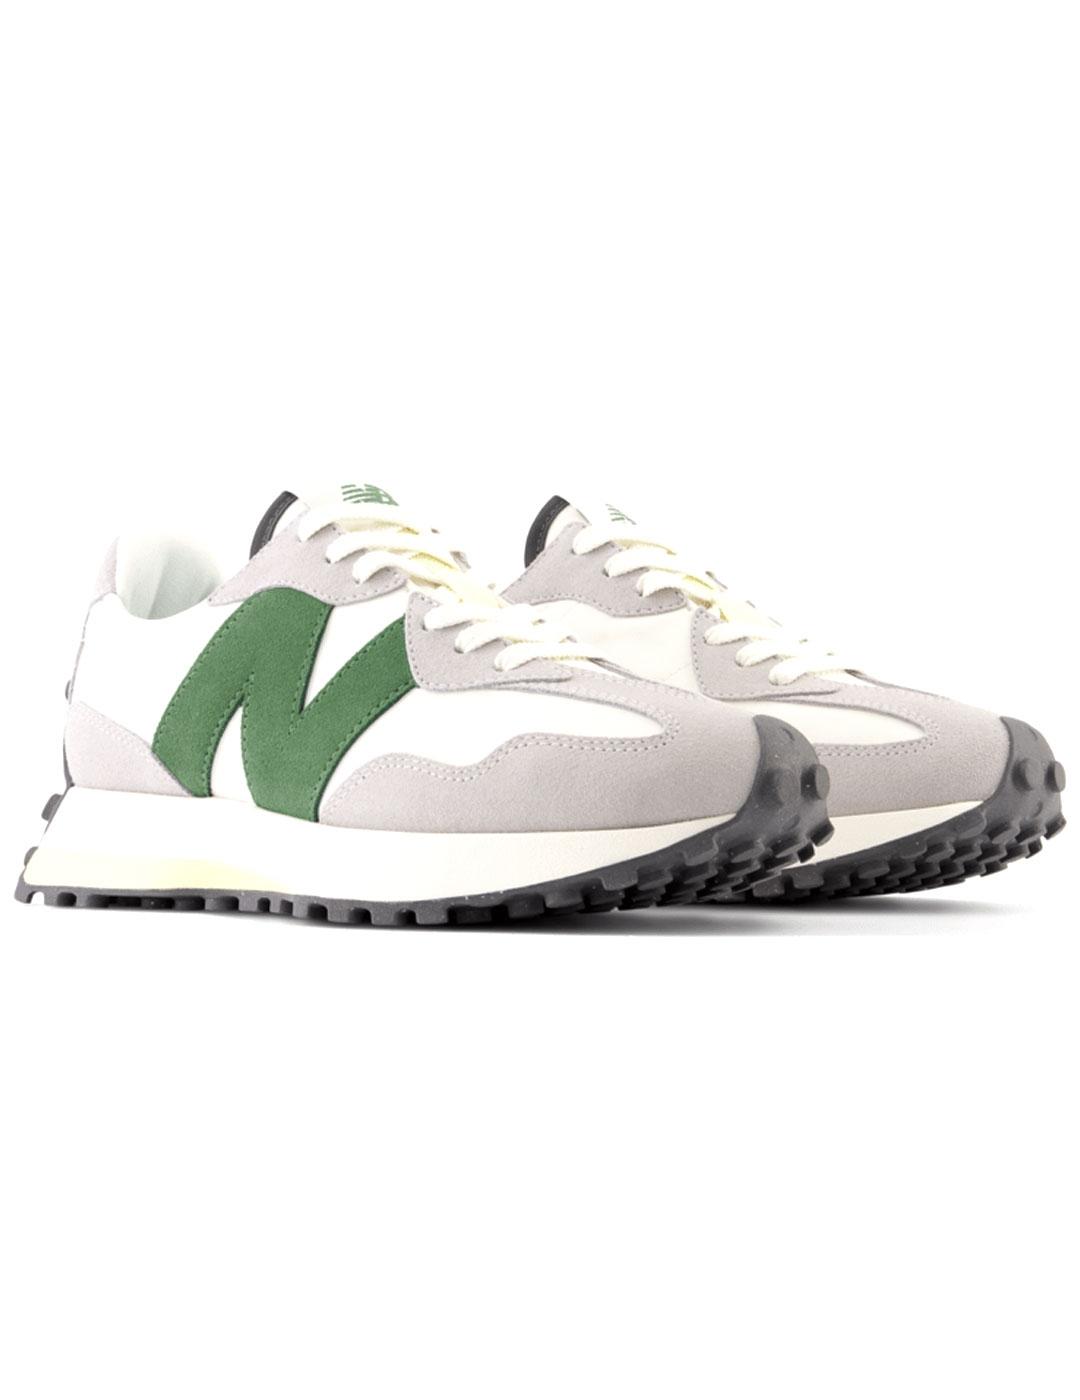 Zapatillas New Balance chica blancas con la N verde